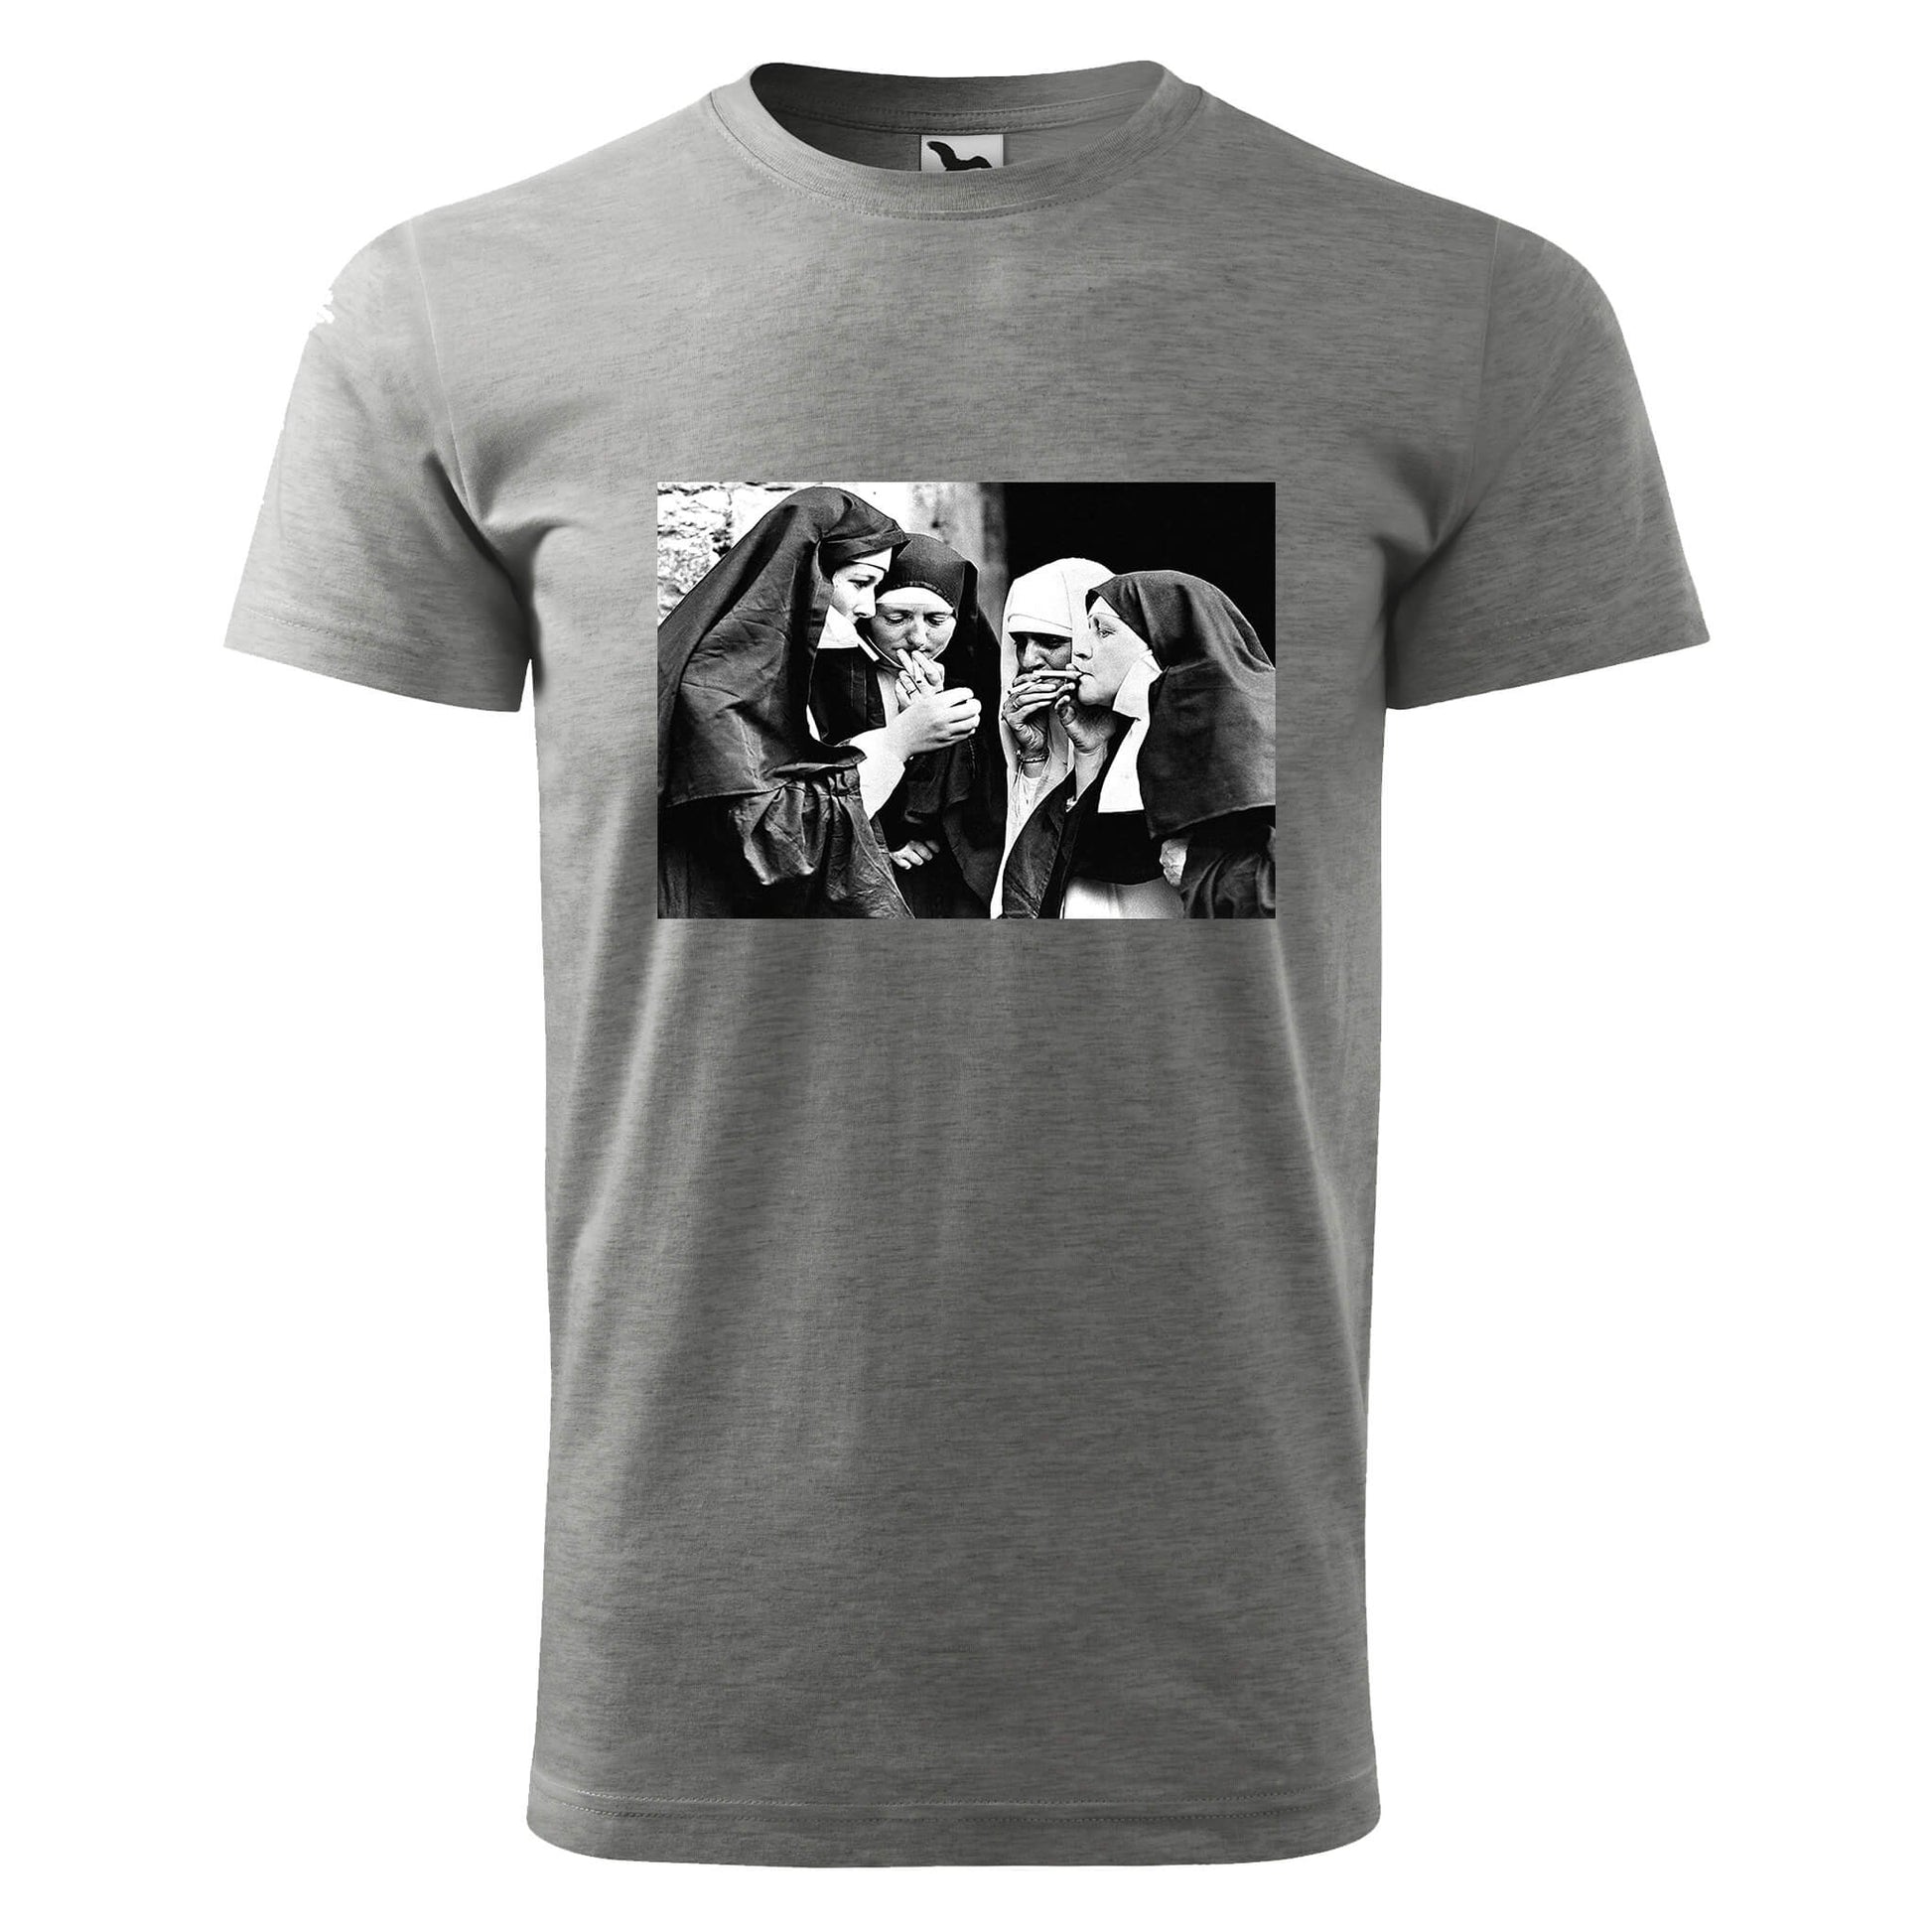 Smoking nuns t-shirt - rvdesignprint